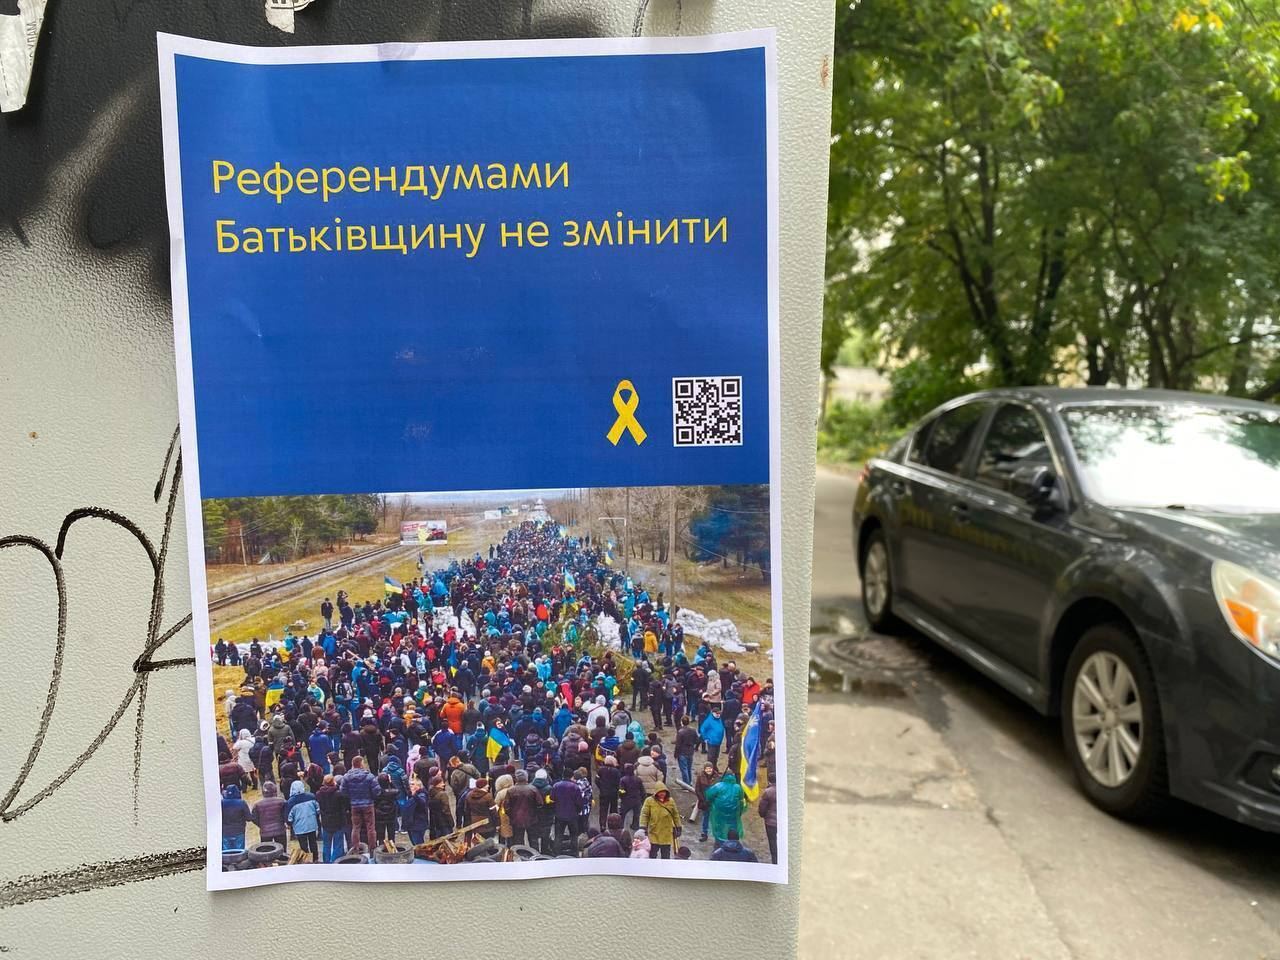 Простые прохожие в Донецке и Луганске поддерживают лозунги патриотов, сообщили партизаны